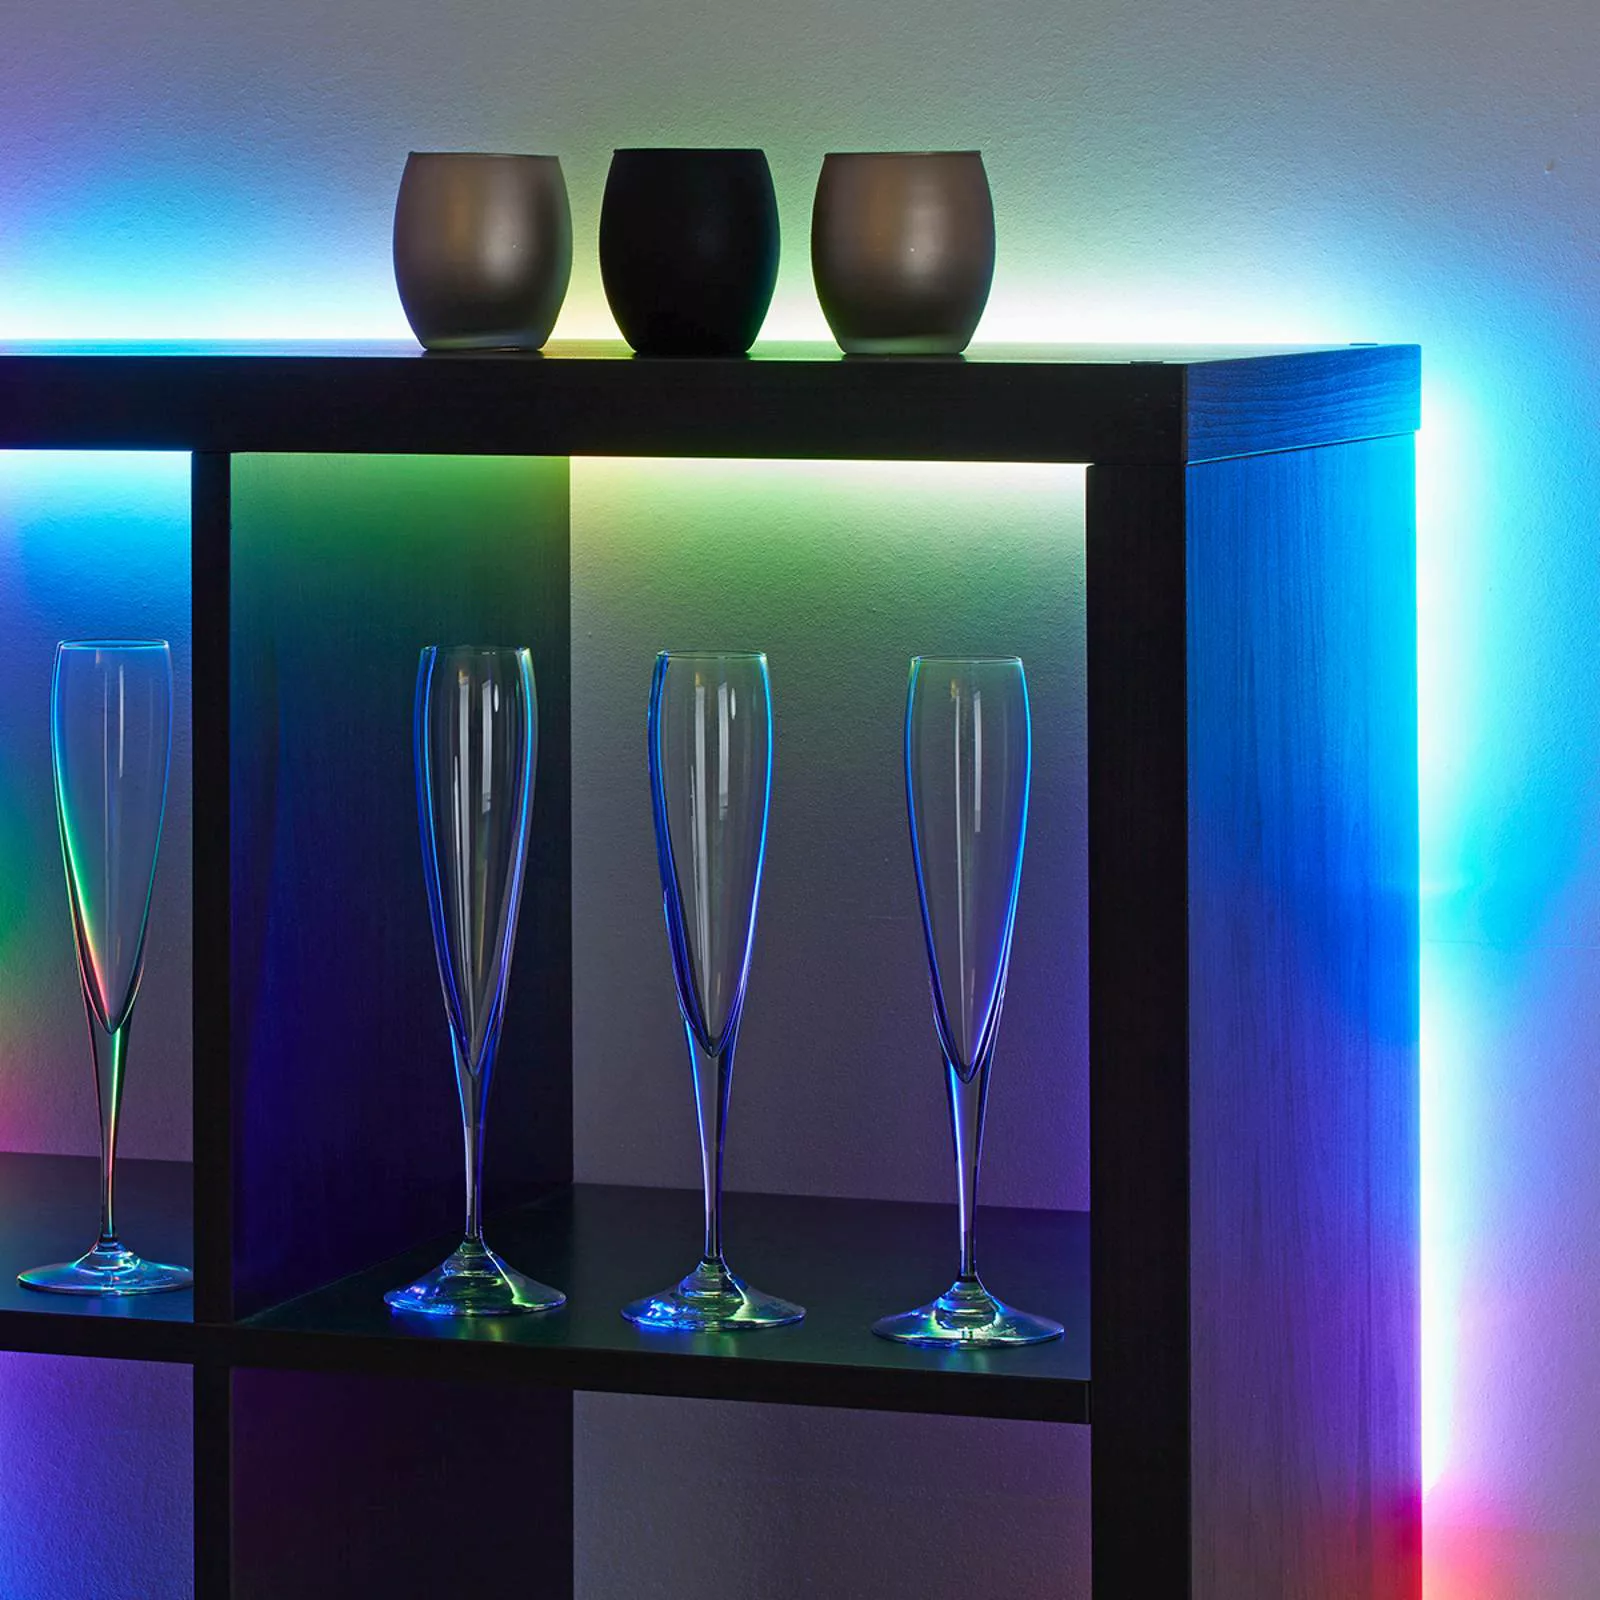 Mit 164 Lichtfunktionen - 500 cm RGB-LED-Strip Mo günstig online kaufen